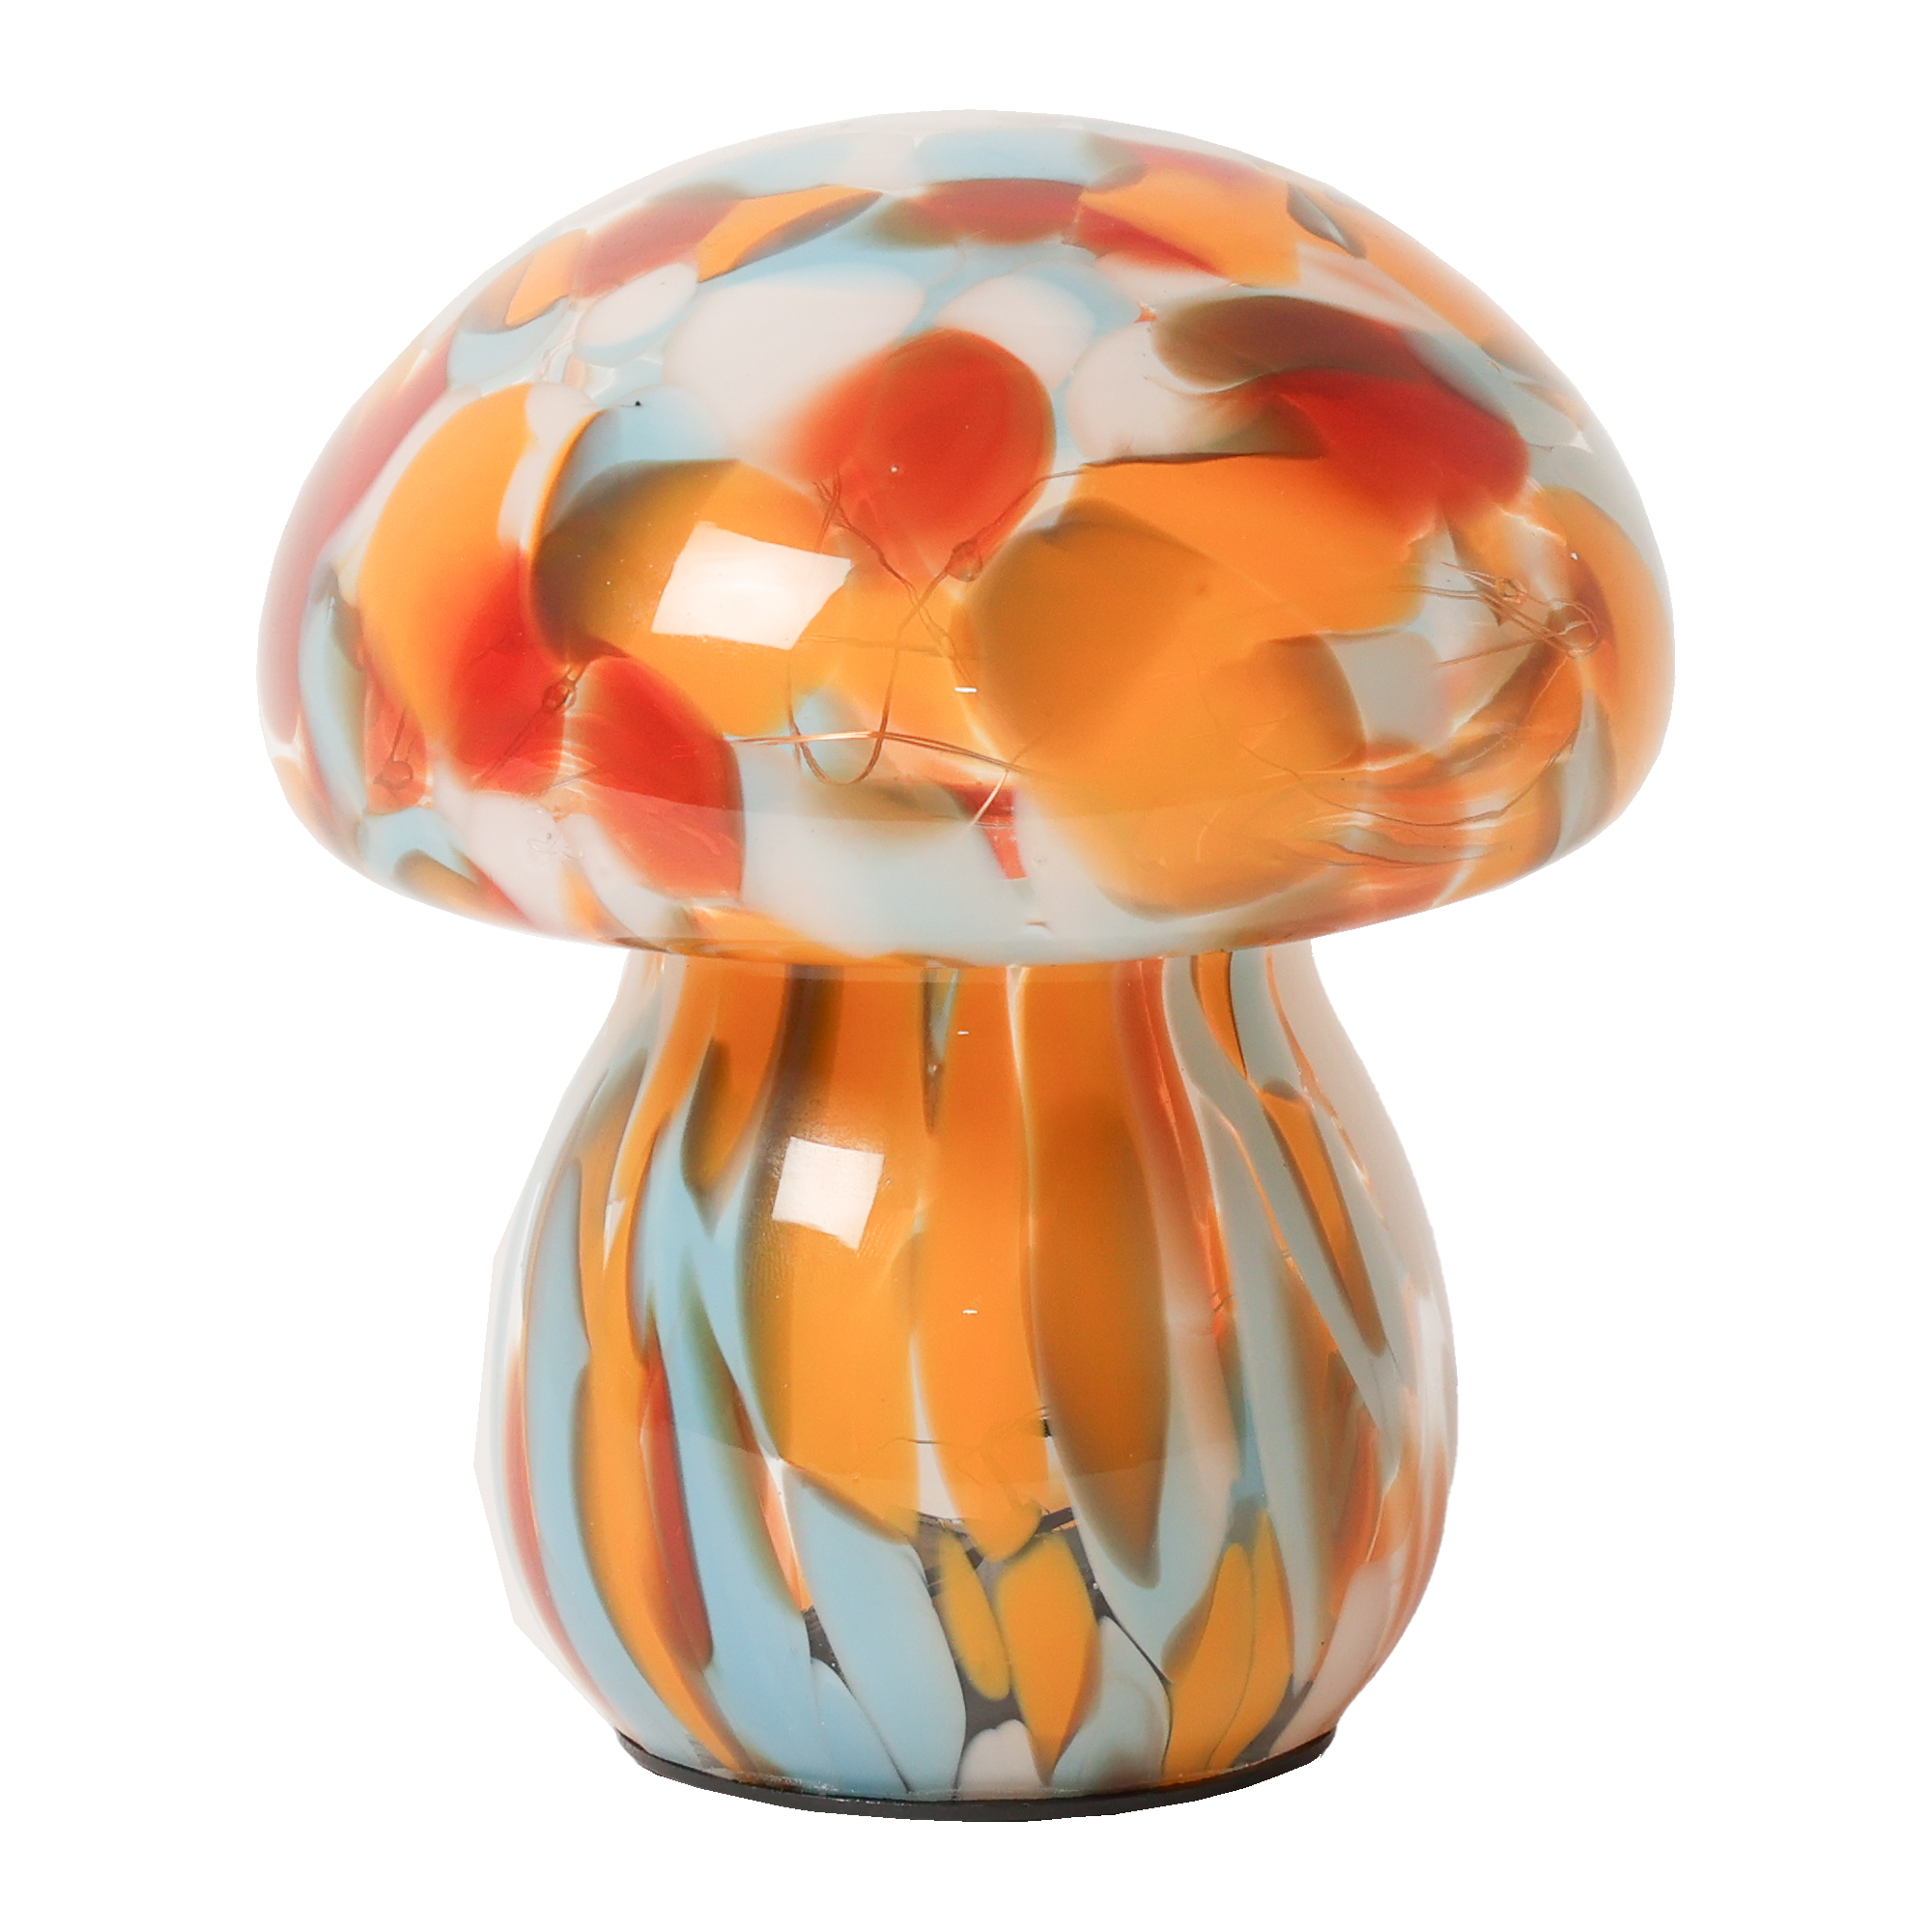 Billede af Mushroom lampe i glas, rød/orange/lys blå hos Naga.dk